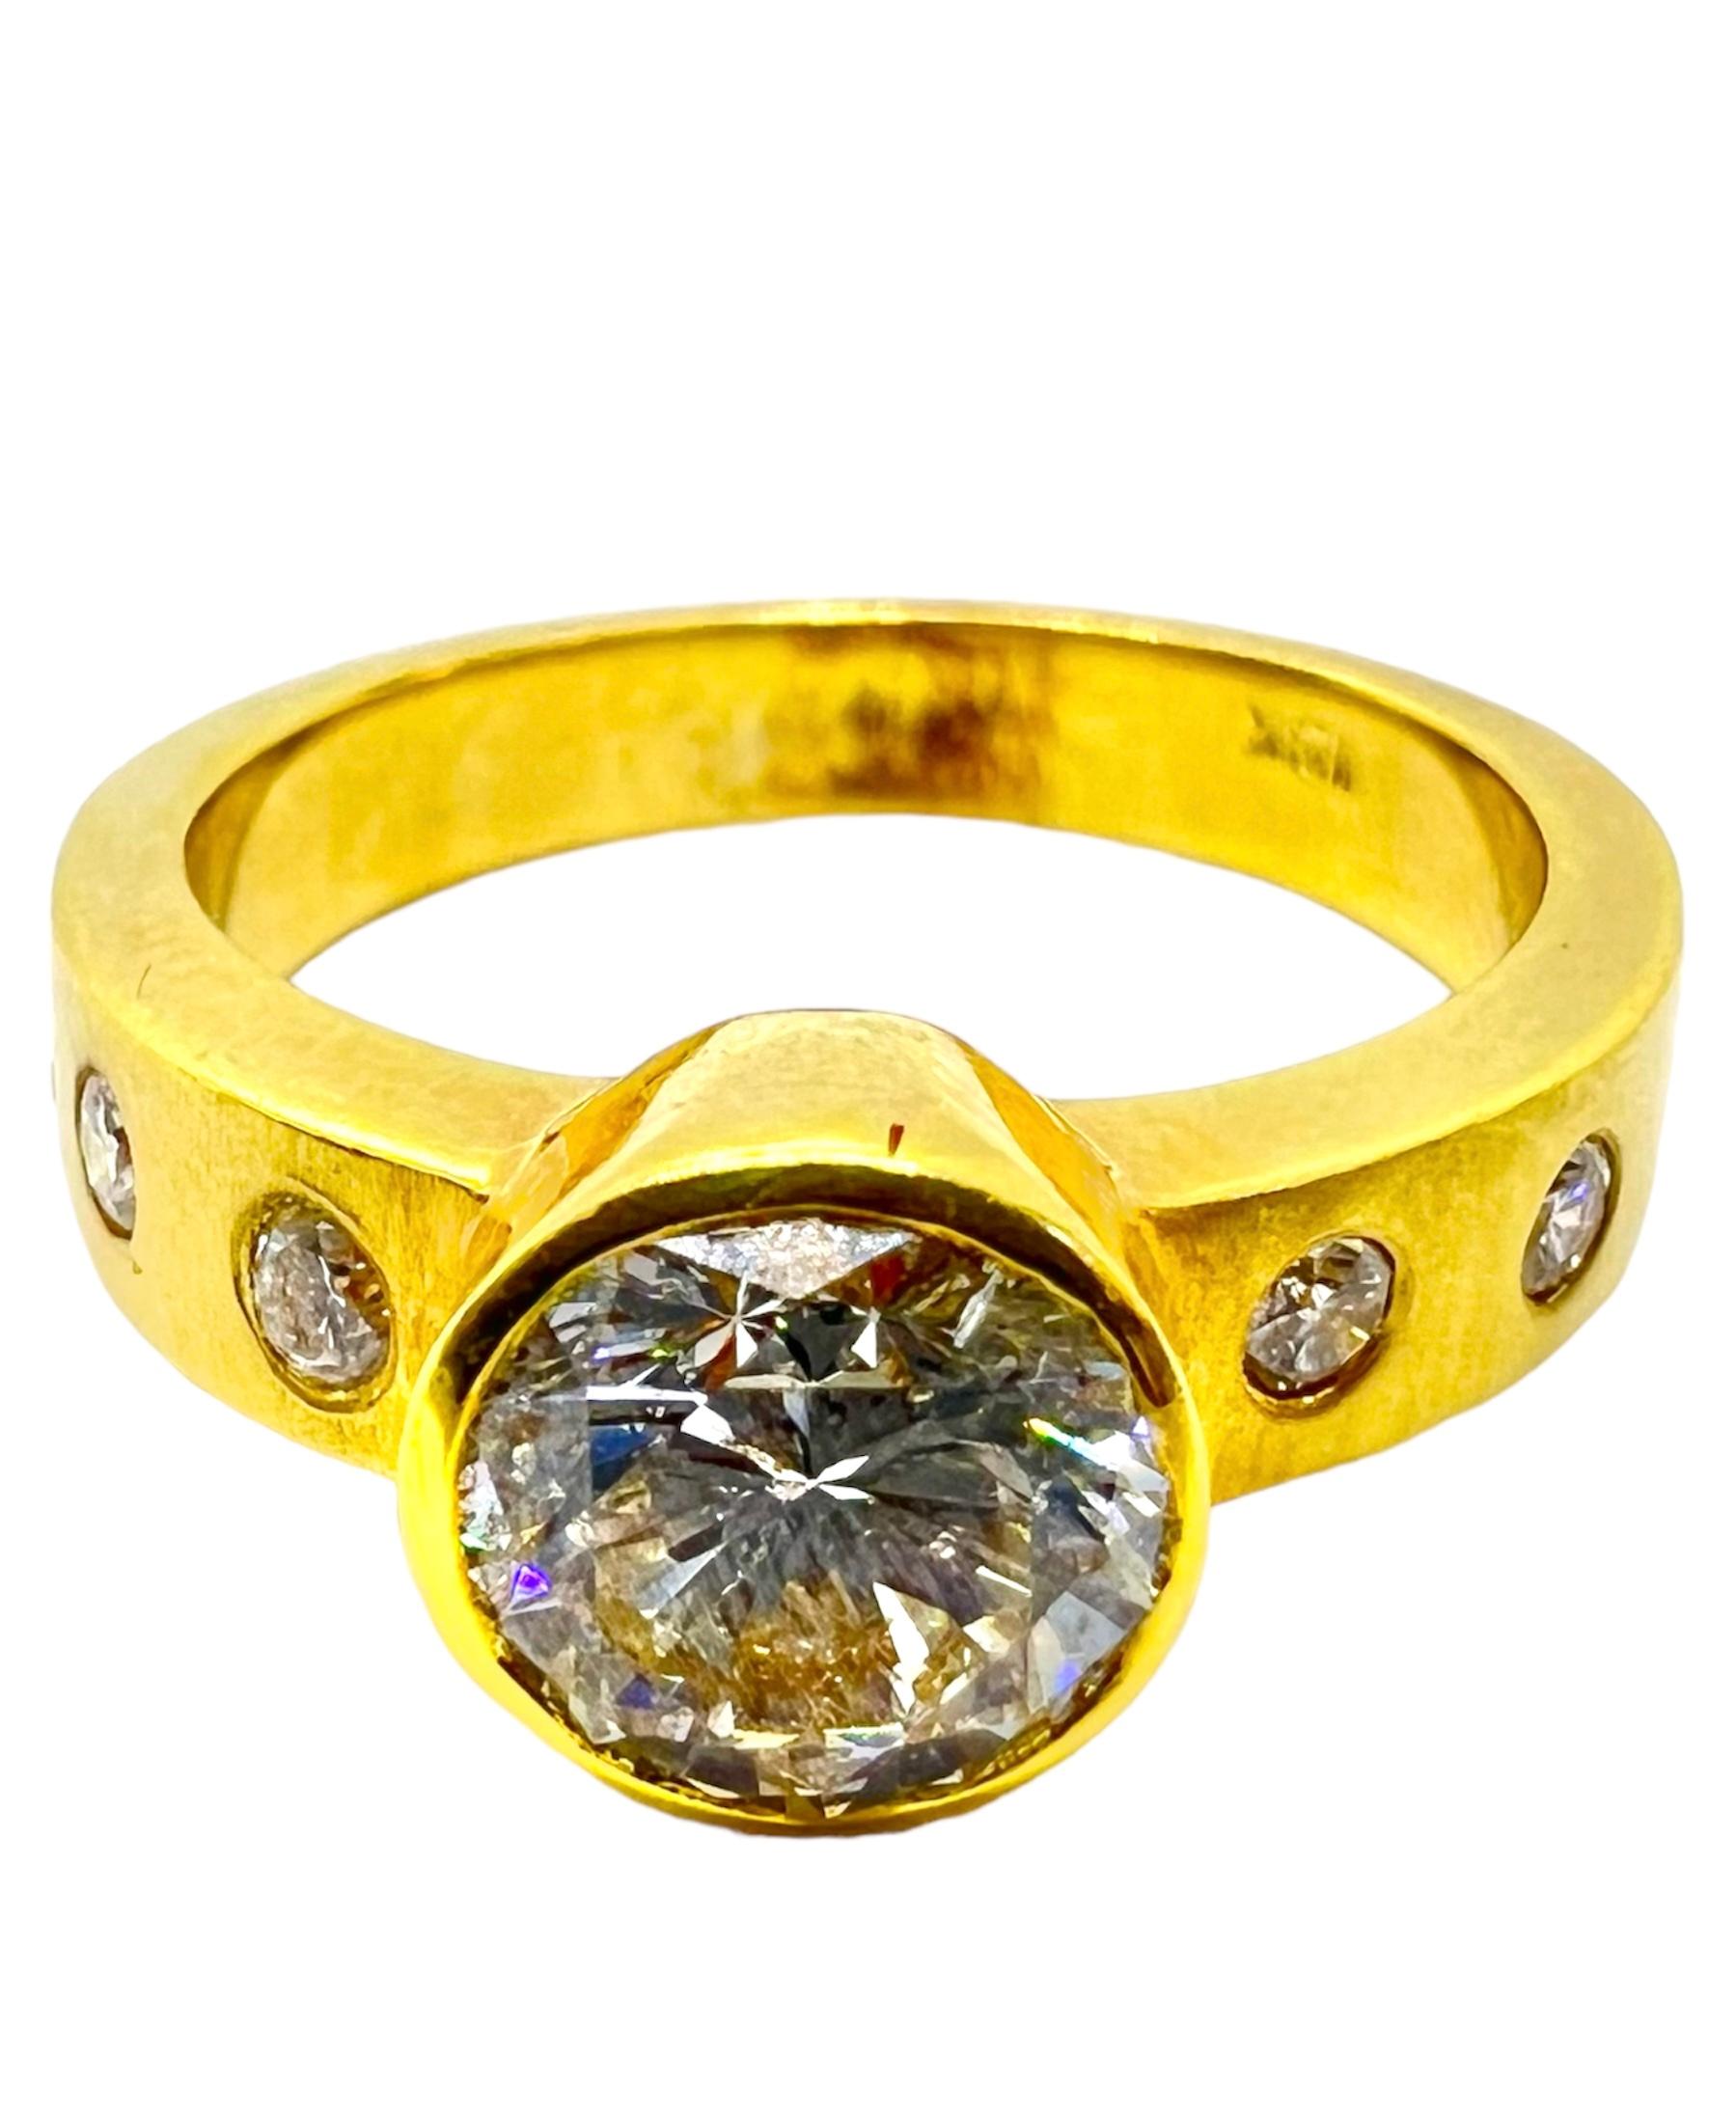 Ring aus 18 Karat Gelbgold mit rundem Diamant in der Mitte, der mit kleinen Diamanten verziert ist.

Sophia D von Joseph Dardashti LTD ist seit 35 Jahren weltweit bekannt und lässt sich vom klassischen Art-Déco-Design inspirieren, das mit modernen